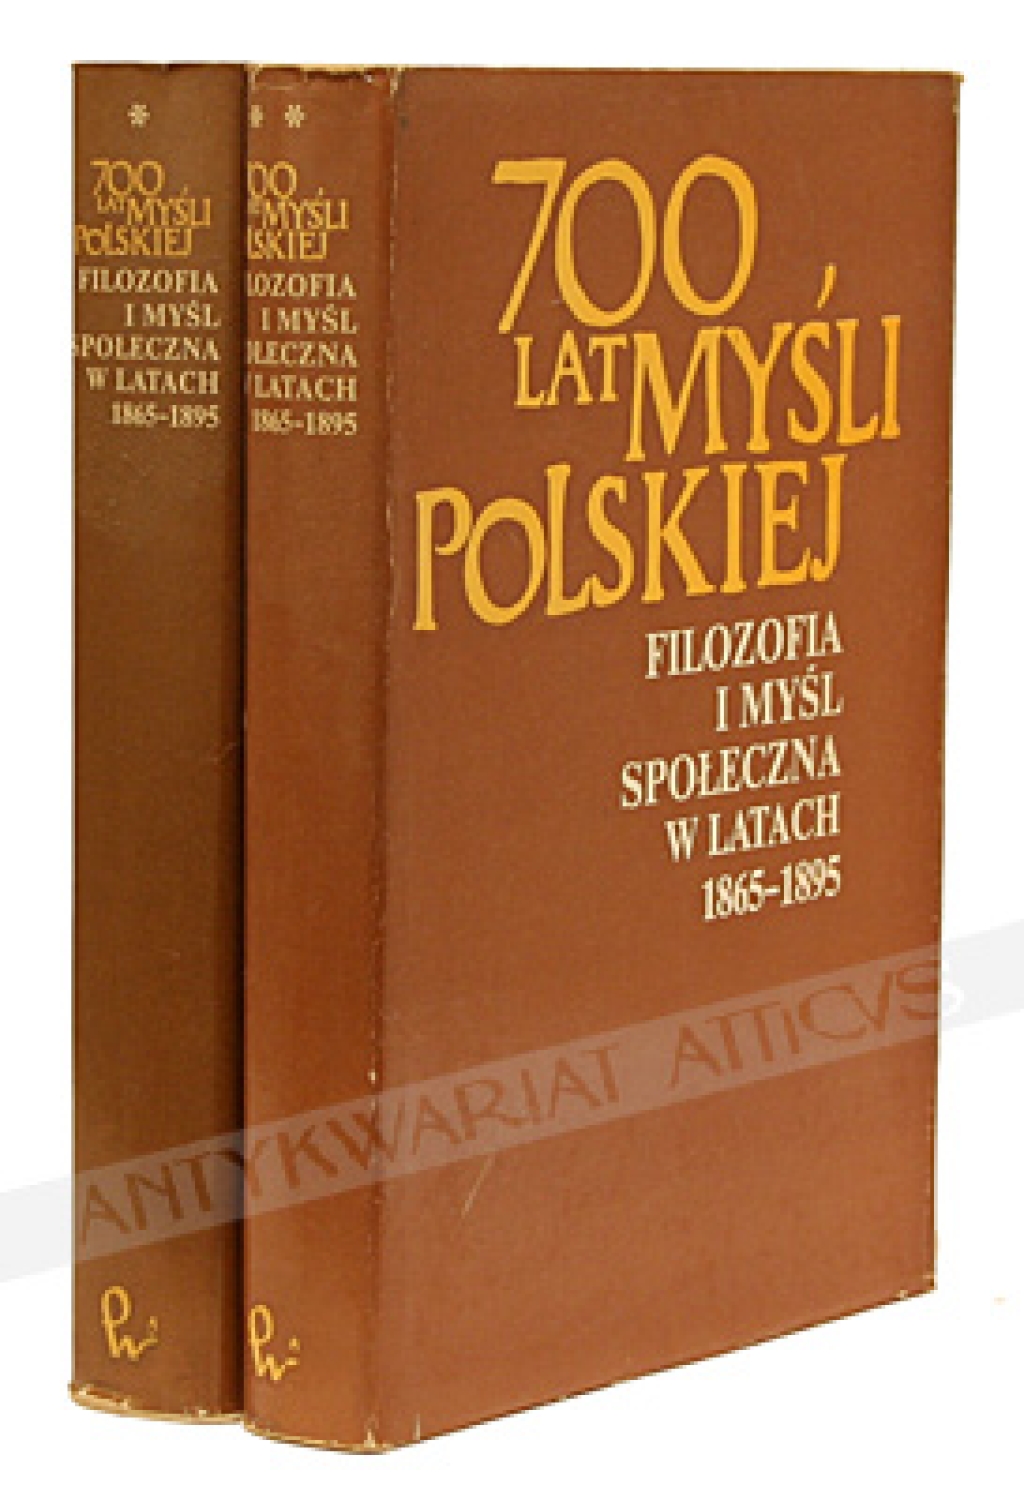 700 lat myśli polskiej. Filozofia i myśl społeczna w latach 1865-1895, t. I-II